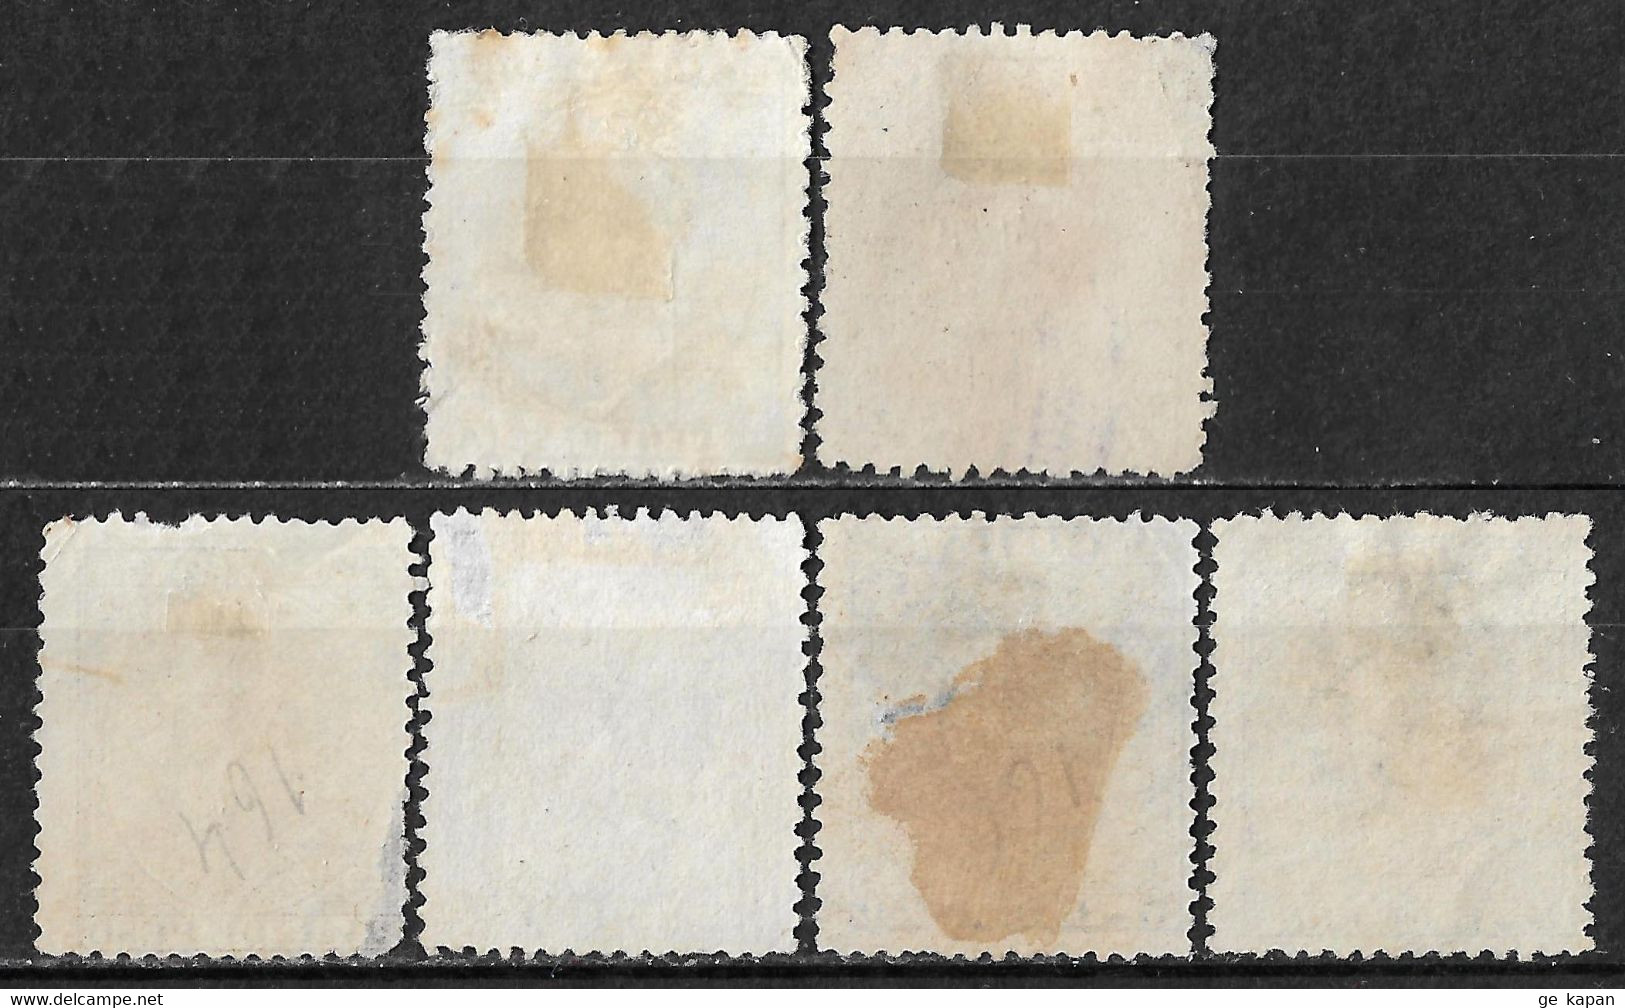 1880-1887 IslaDaCUBA Set Of 6 Used/Unused Stamps (Michel # 33,40,47,48I,48II) - Cuba (1874-1898)